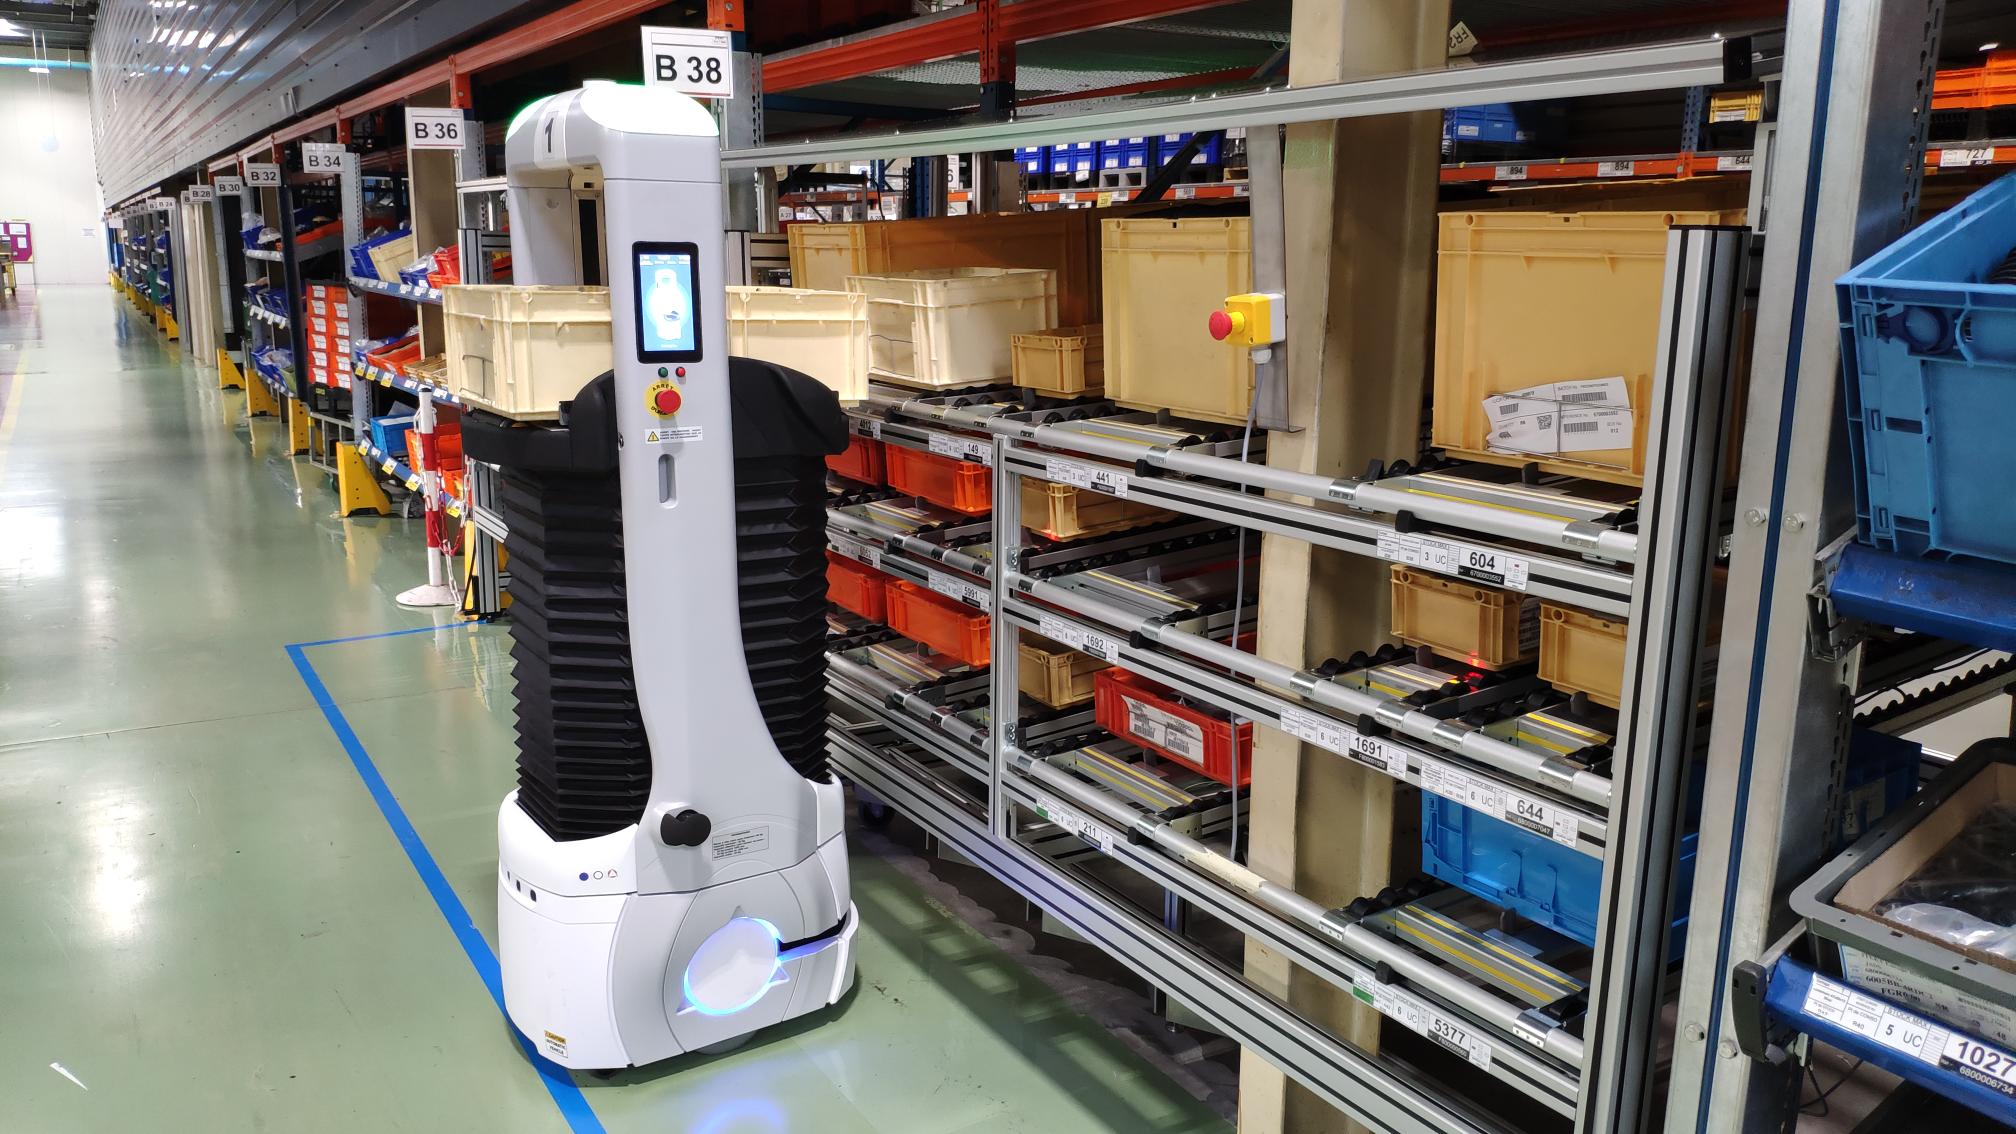 Lire la suite à propos de l’article Quelles sont les différences entre des AMR (Autonomous Mobile Robot) et des AGV (Automated Guided Vehicle) ?